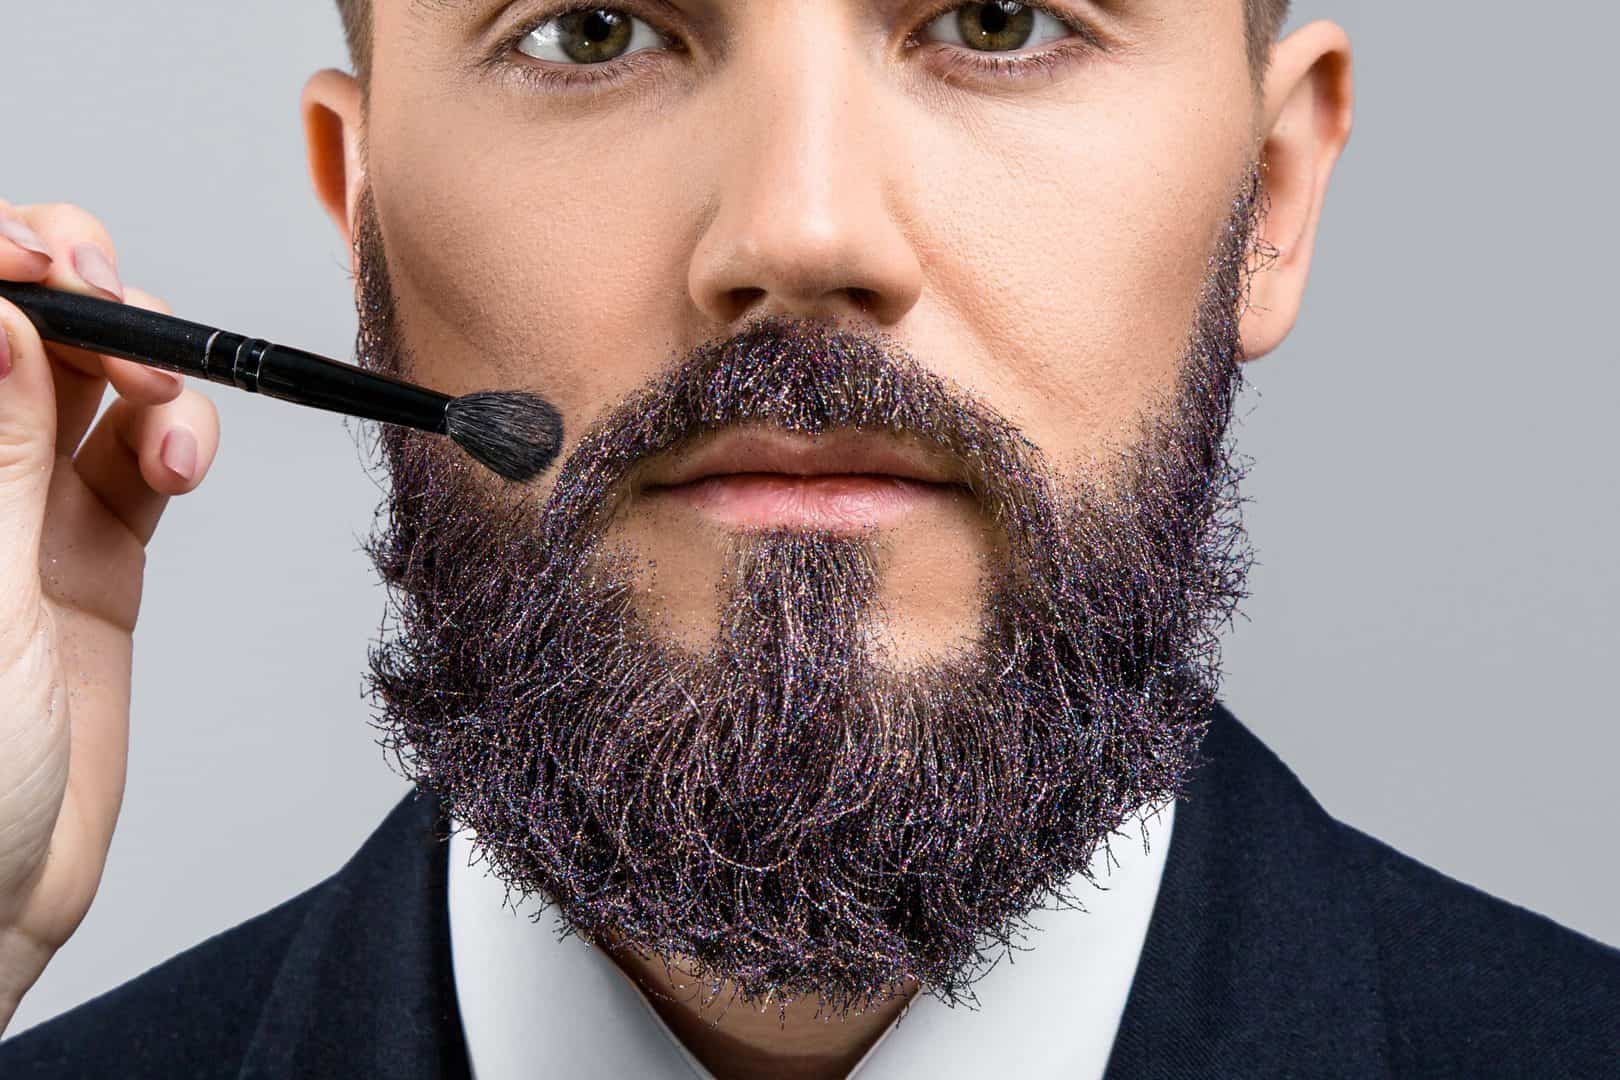 Mann wirt Bart gefärbt